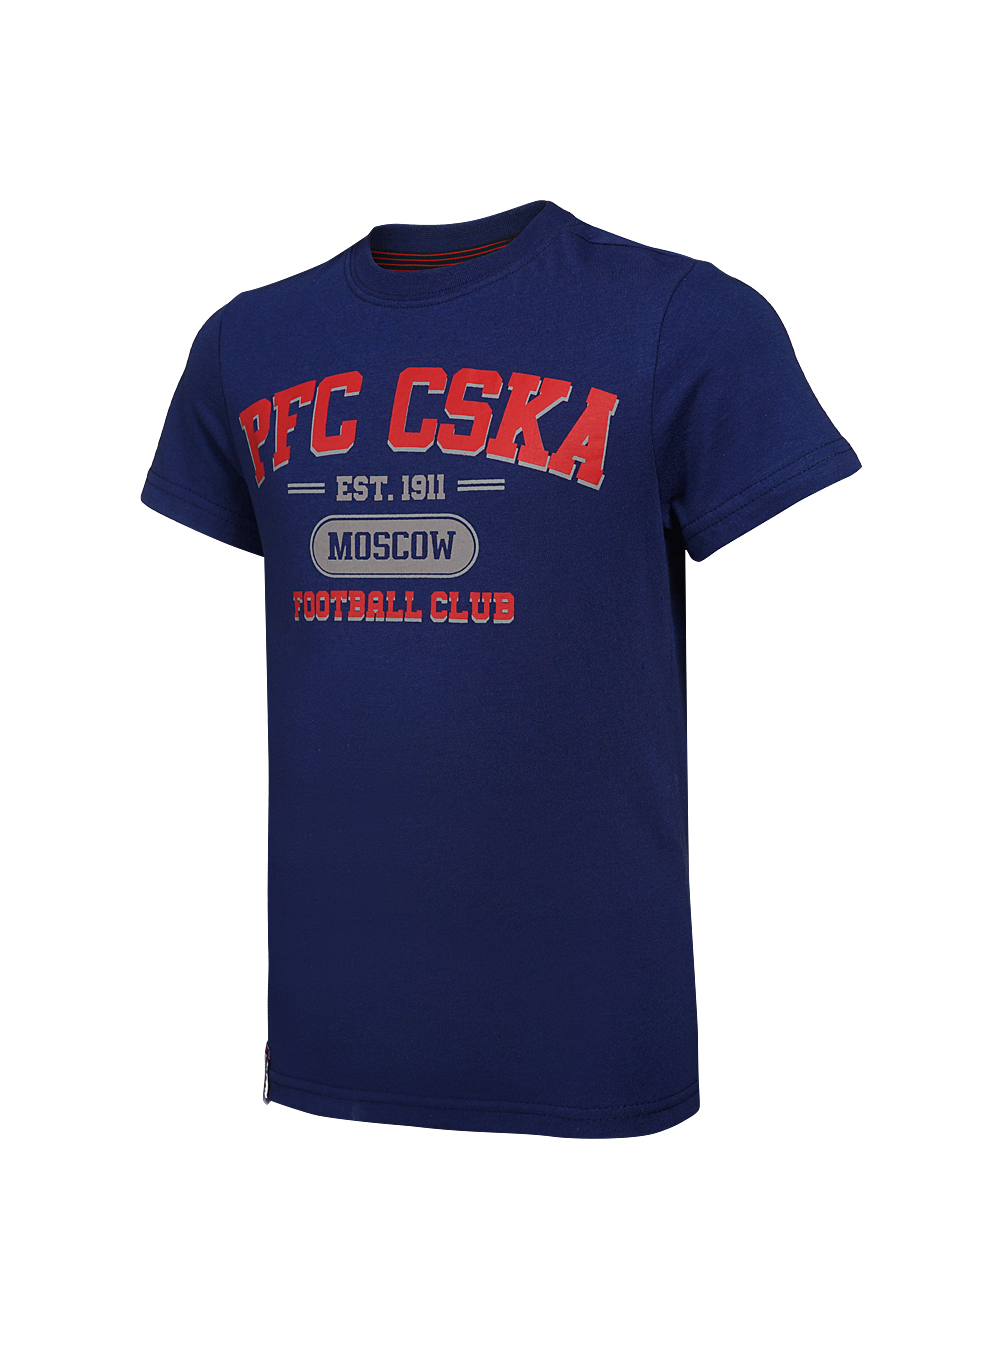 Купить Футболка детская  PFC CSKA Moscow синяя (140) по Нижнему Новгороду